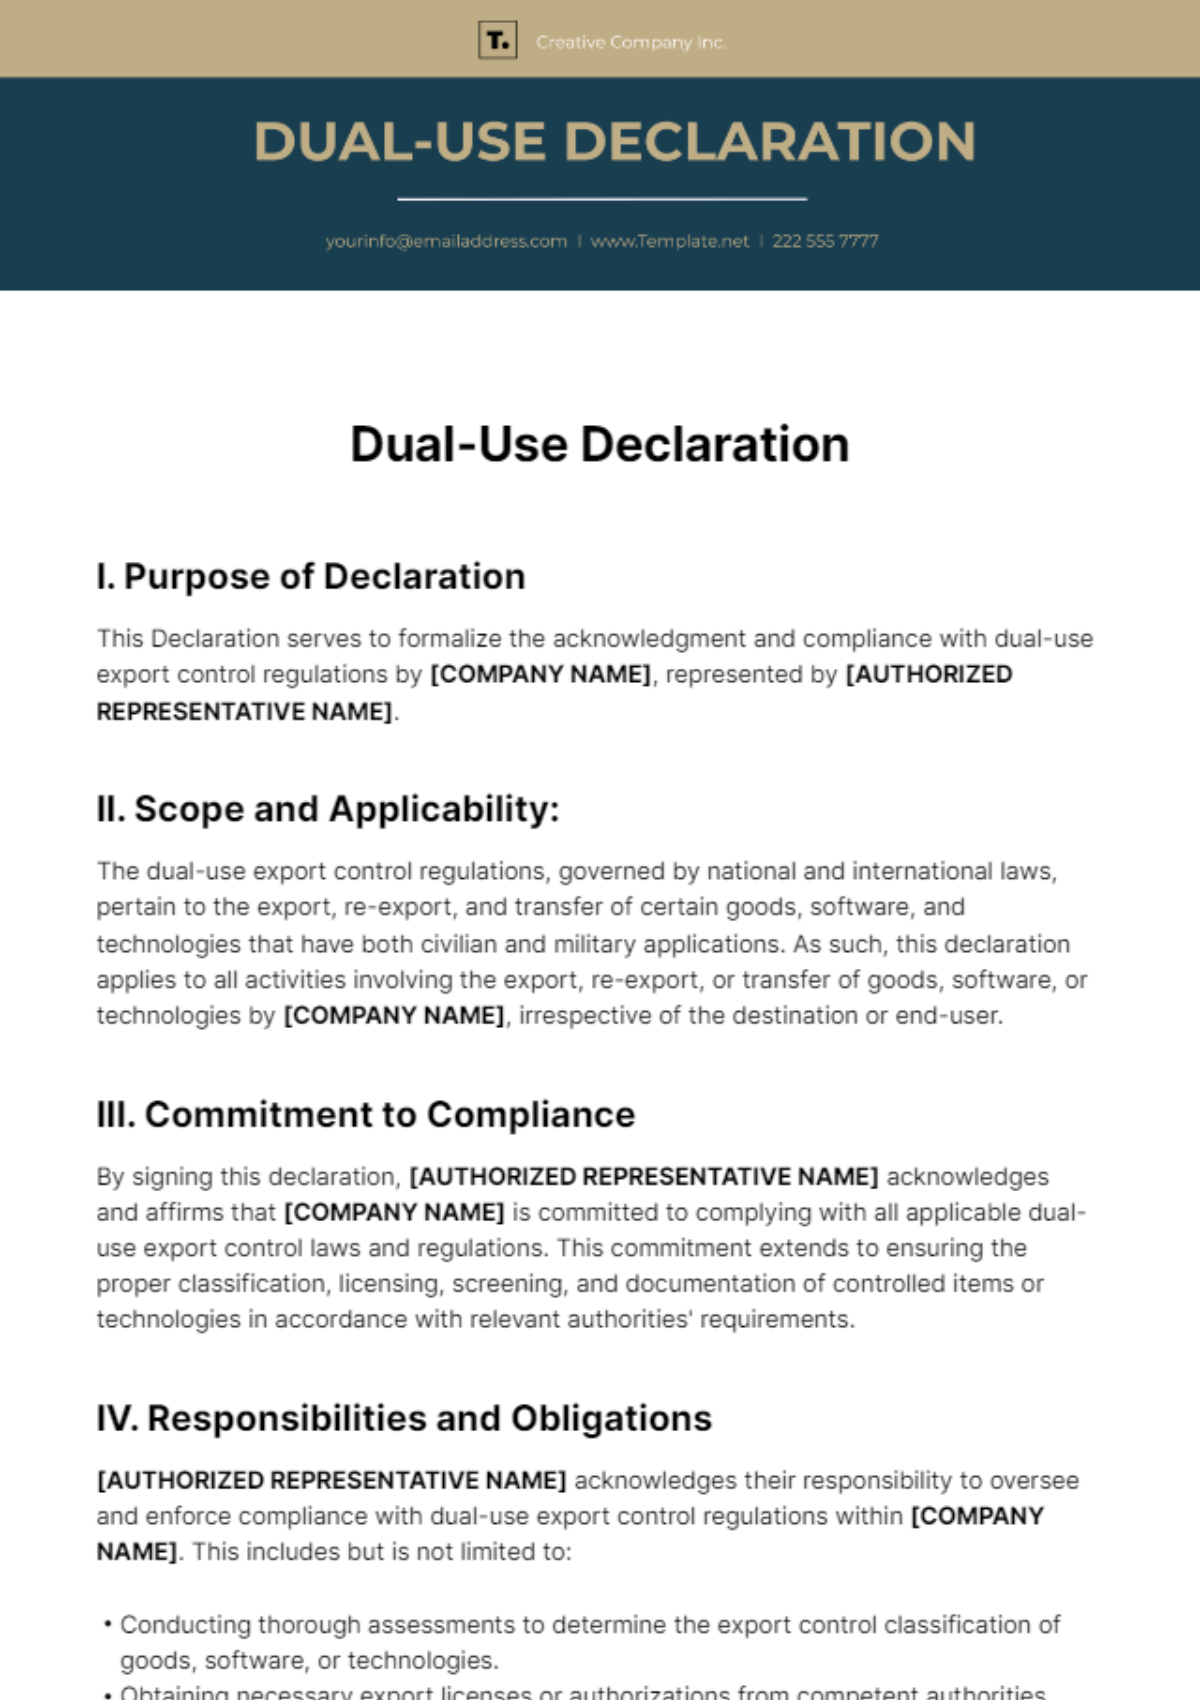 Dual-Use Declaration Template